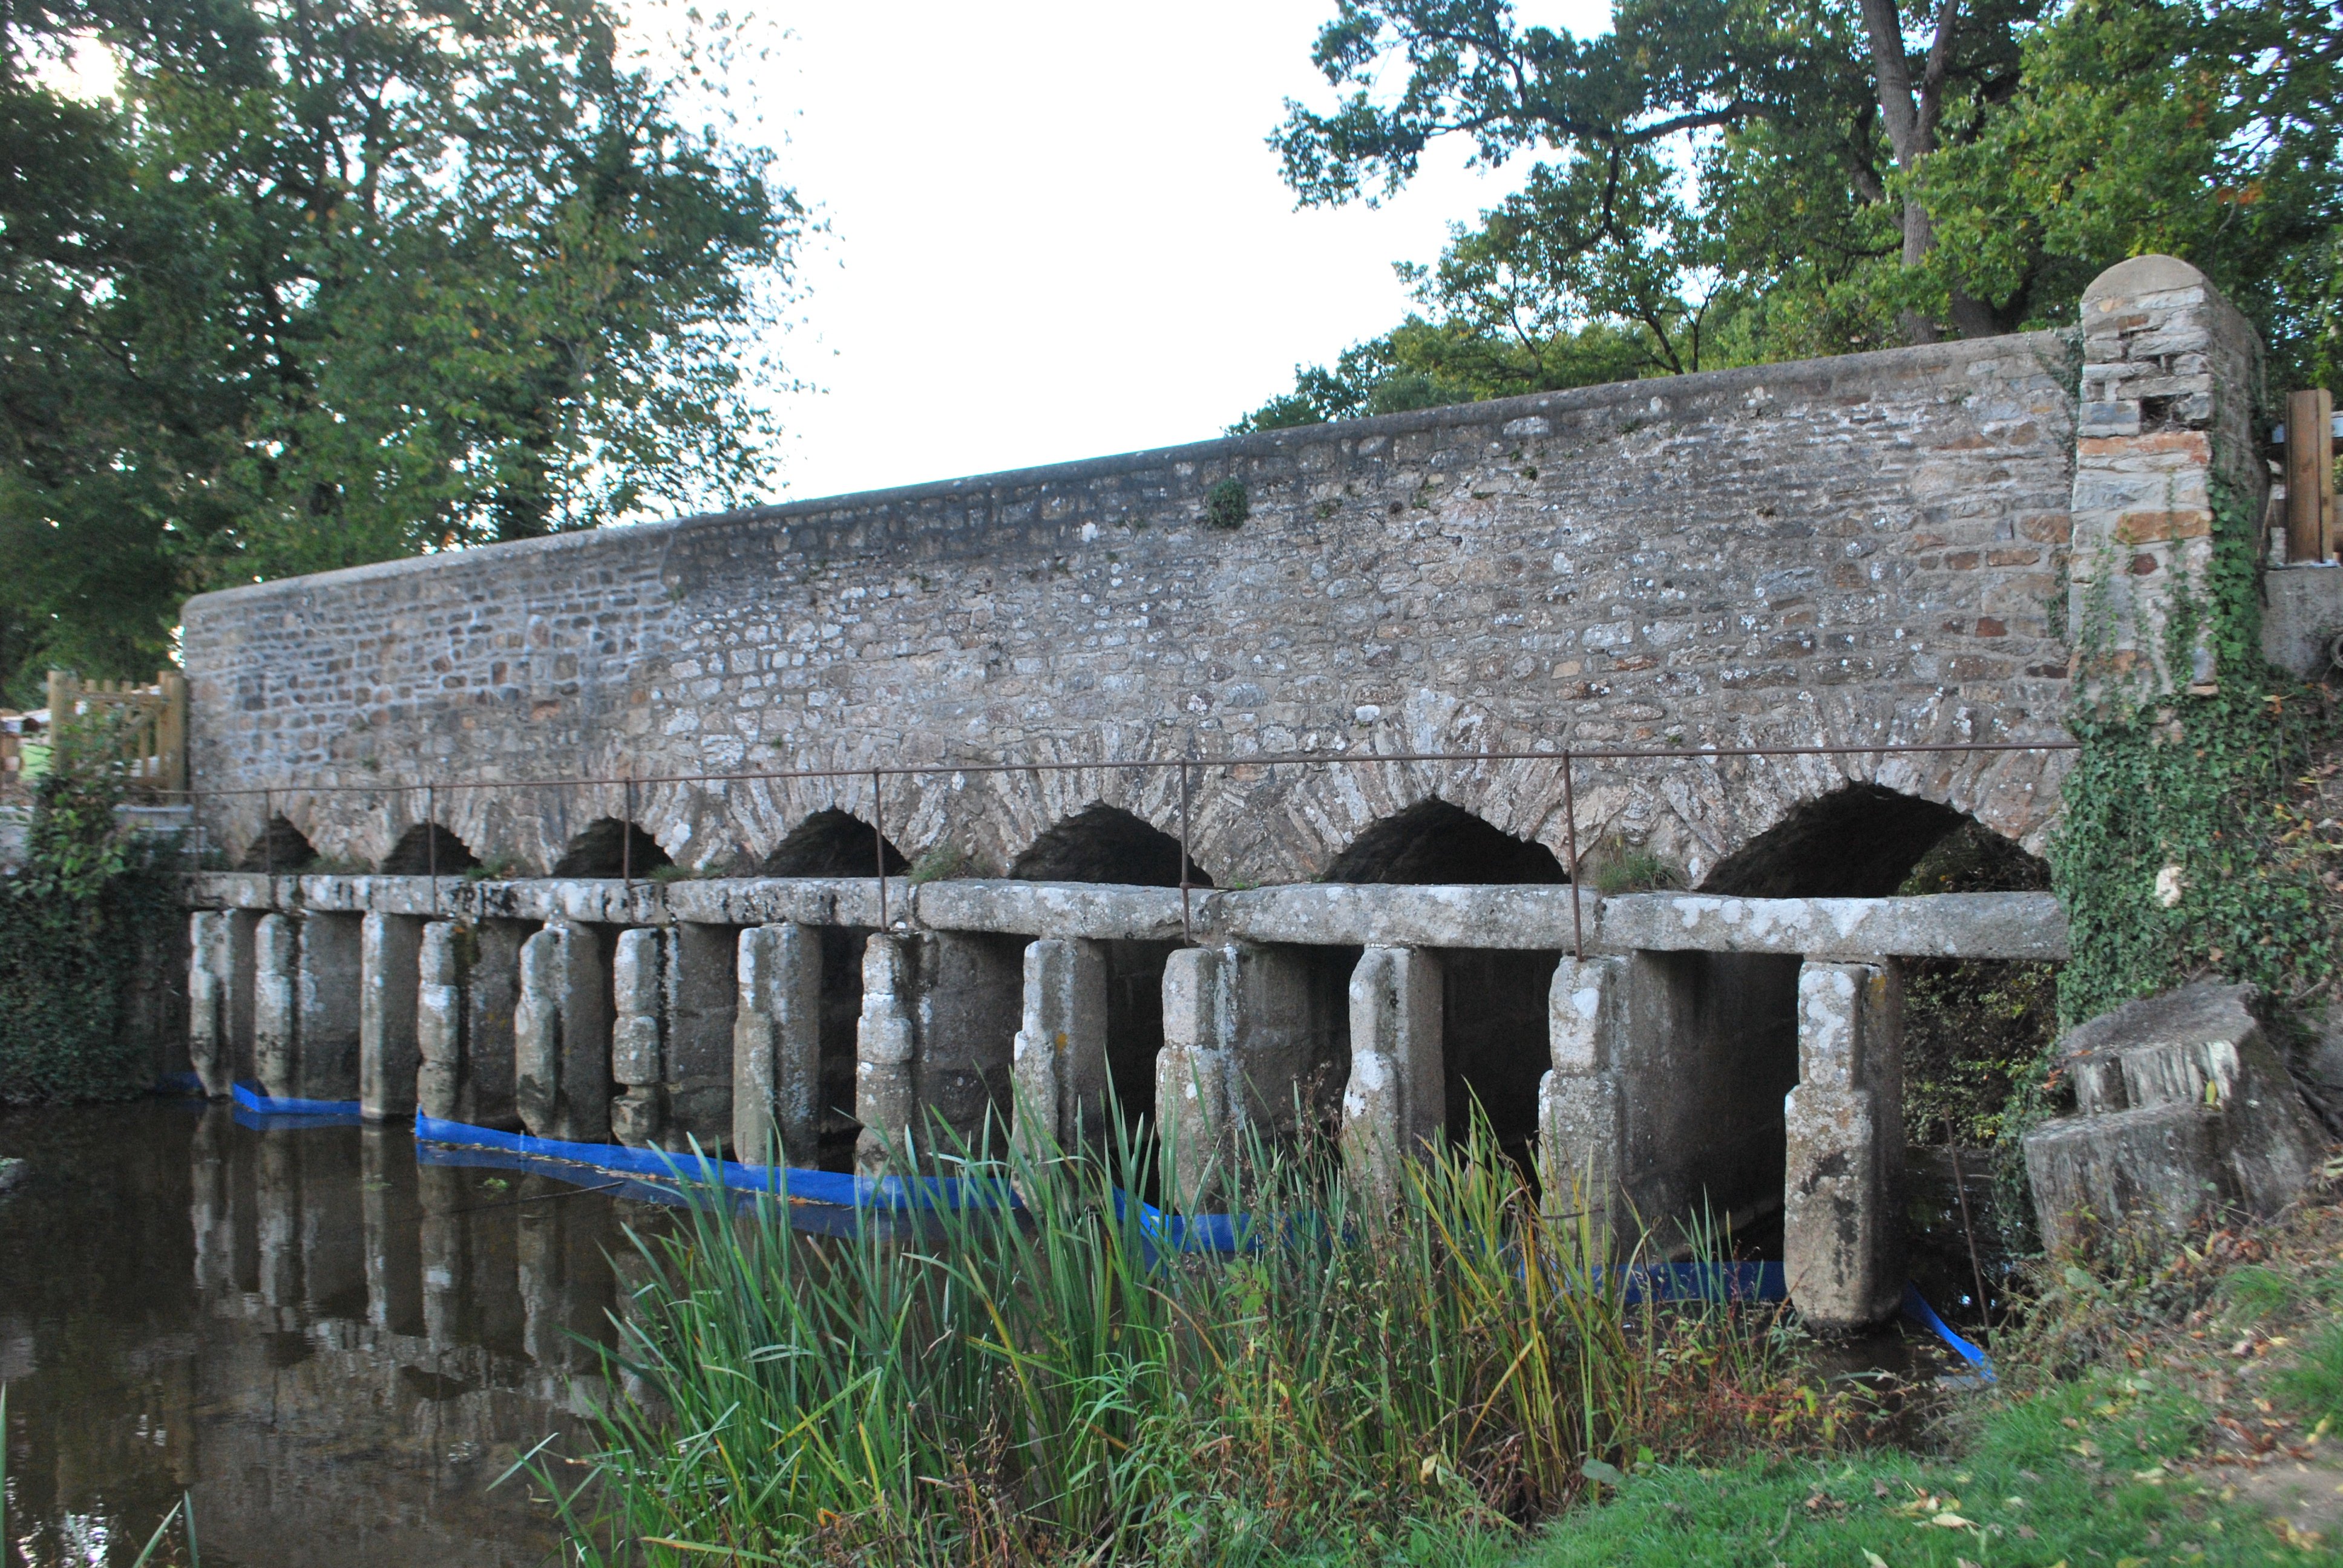 Un pont en pierre avec plusieurs arches. On voit juste devant des encoches pour mettre des panneaux en bois, servant à fermer le bassin longé par le pont.